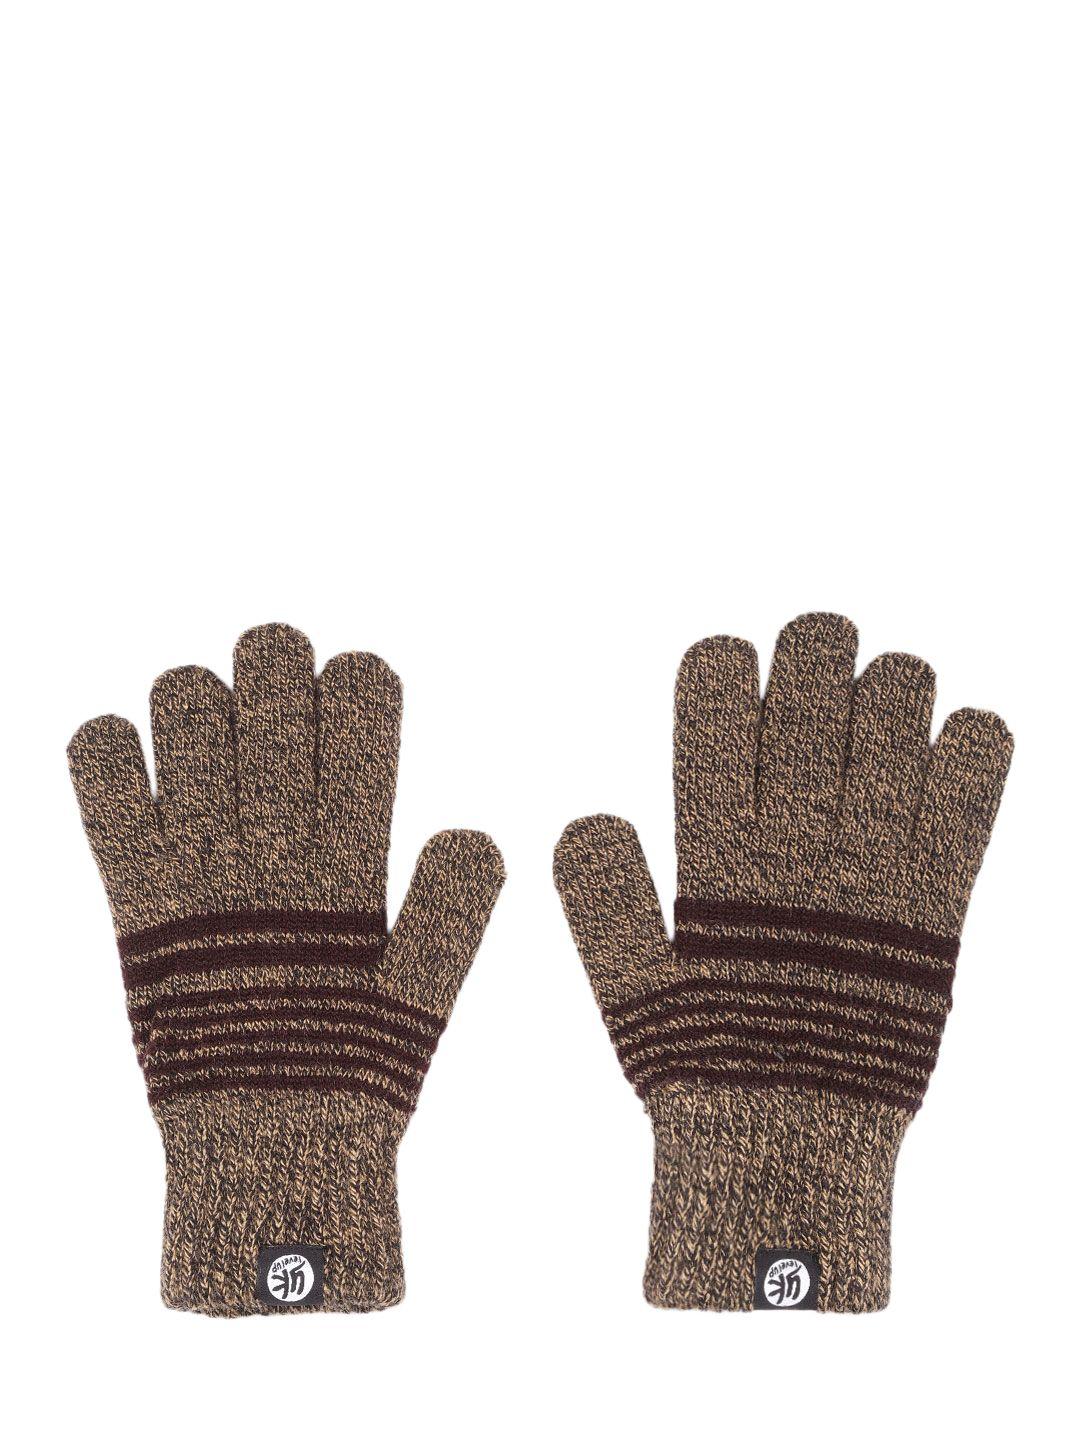 yk kids coffee brown striped hand gloves